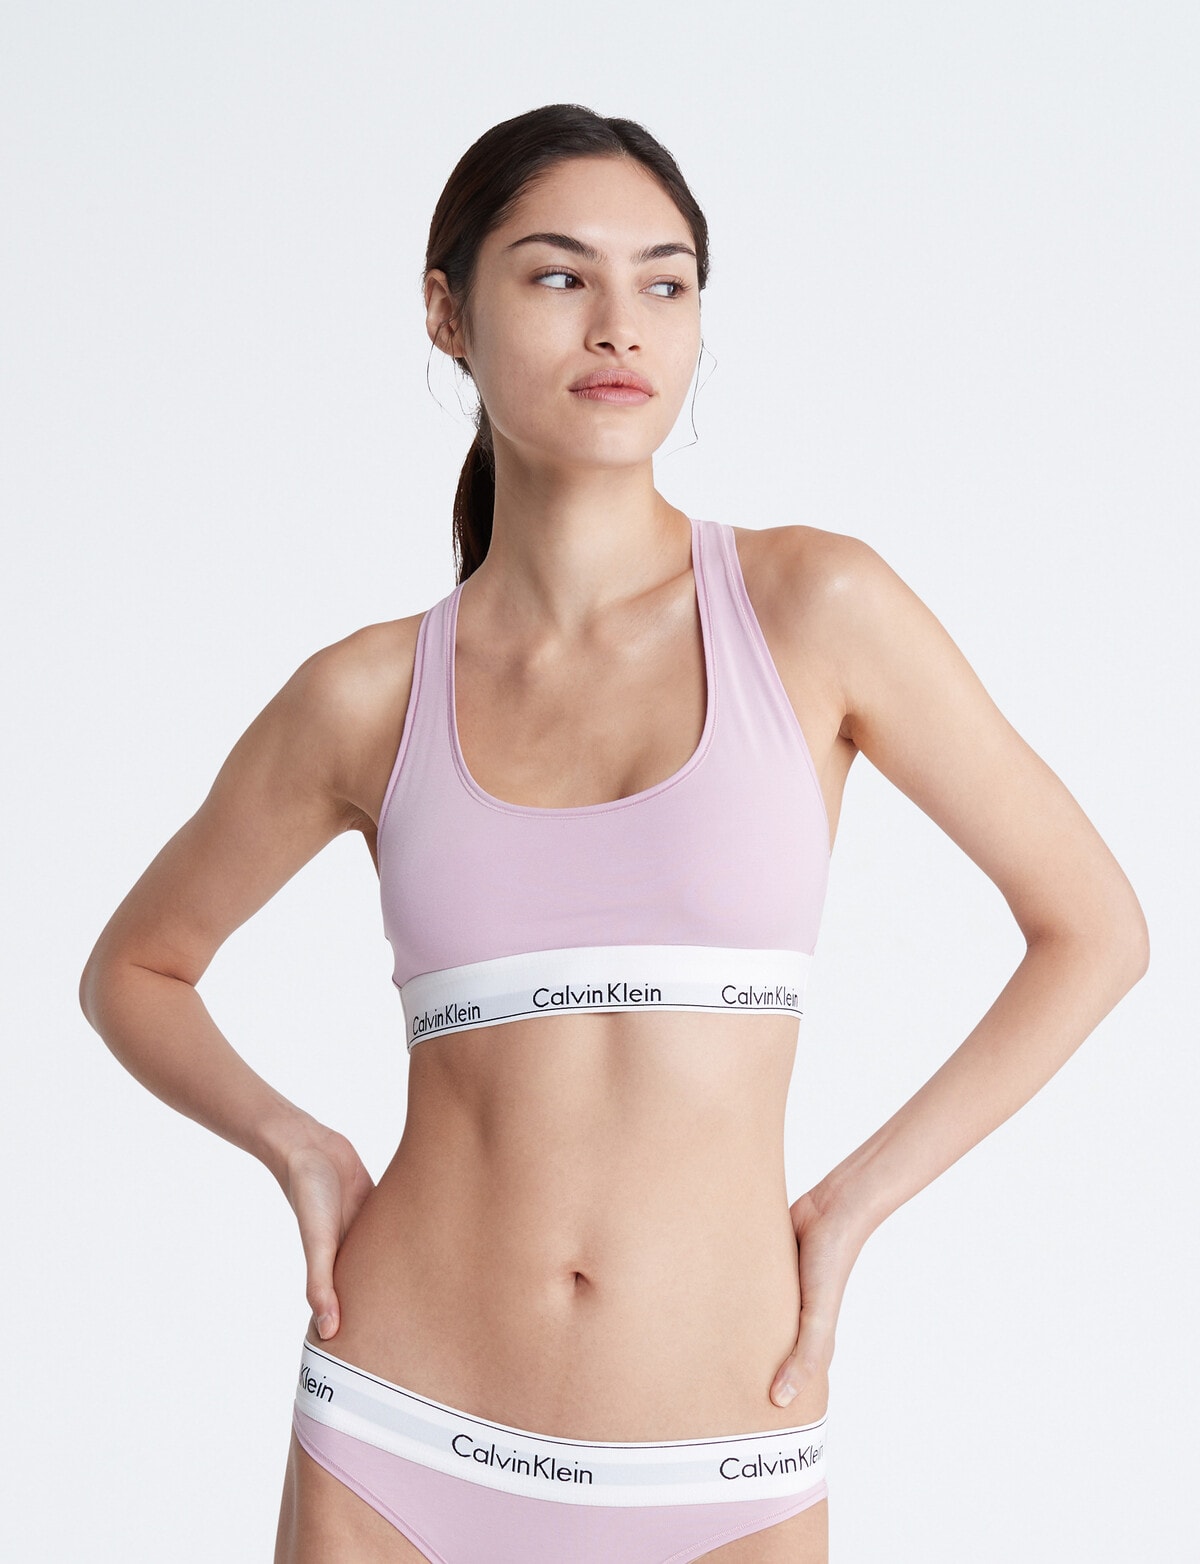 Calvin Klein - Women's Bralette - Modern Cotton - Soft Sports Bra Bralette  - Lounge Wear - Underwear - Signature Logo : : Fashion